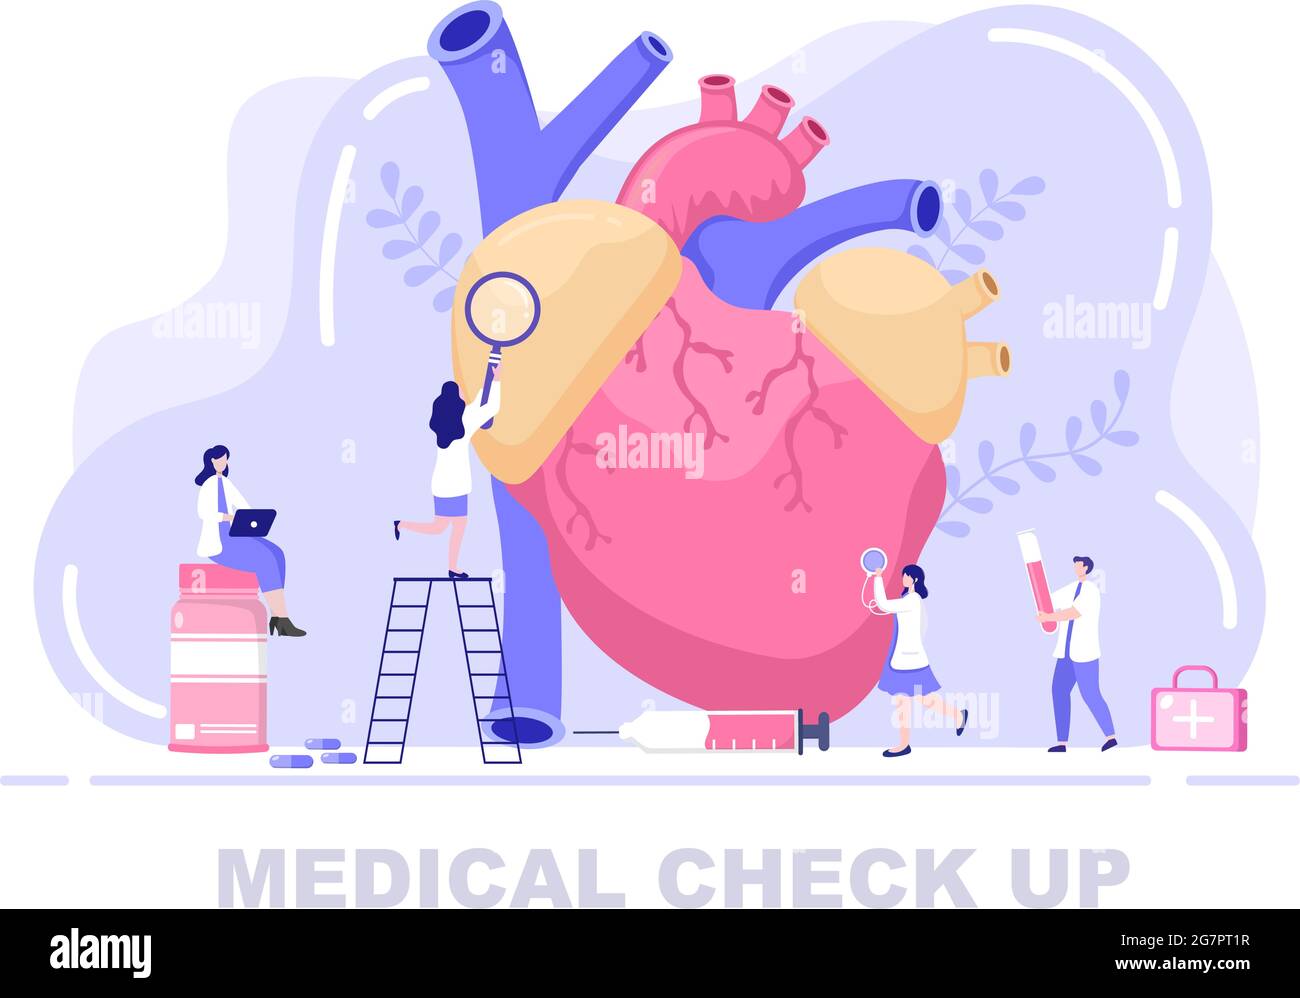 Medizinische Gesundheitscheck Hintergrund Landing Page Illustration. Arzt,  der sich um den Patienten kümmern soll, der den Blutdruck oder das Herz für  die Herstellung von Banner misst Stock-Vektorgrafik - Alamy